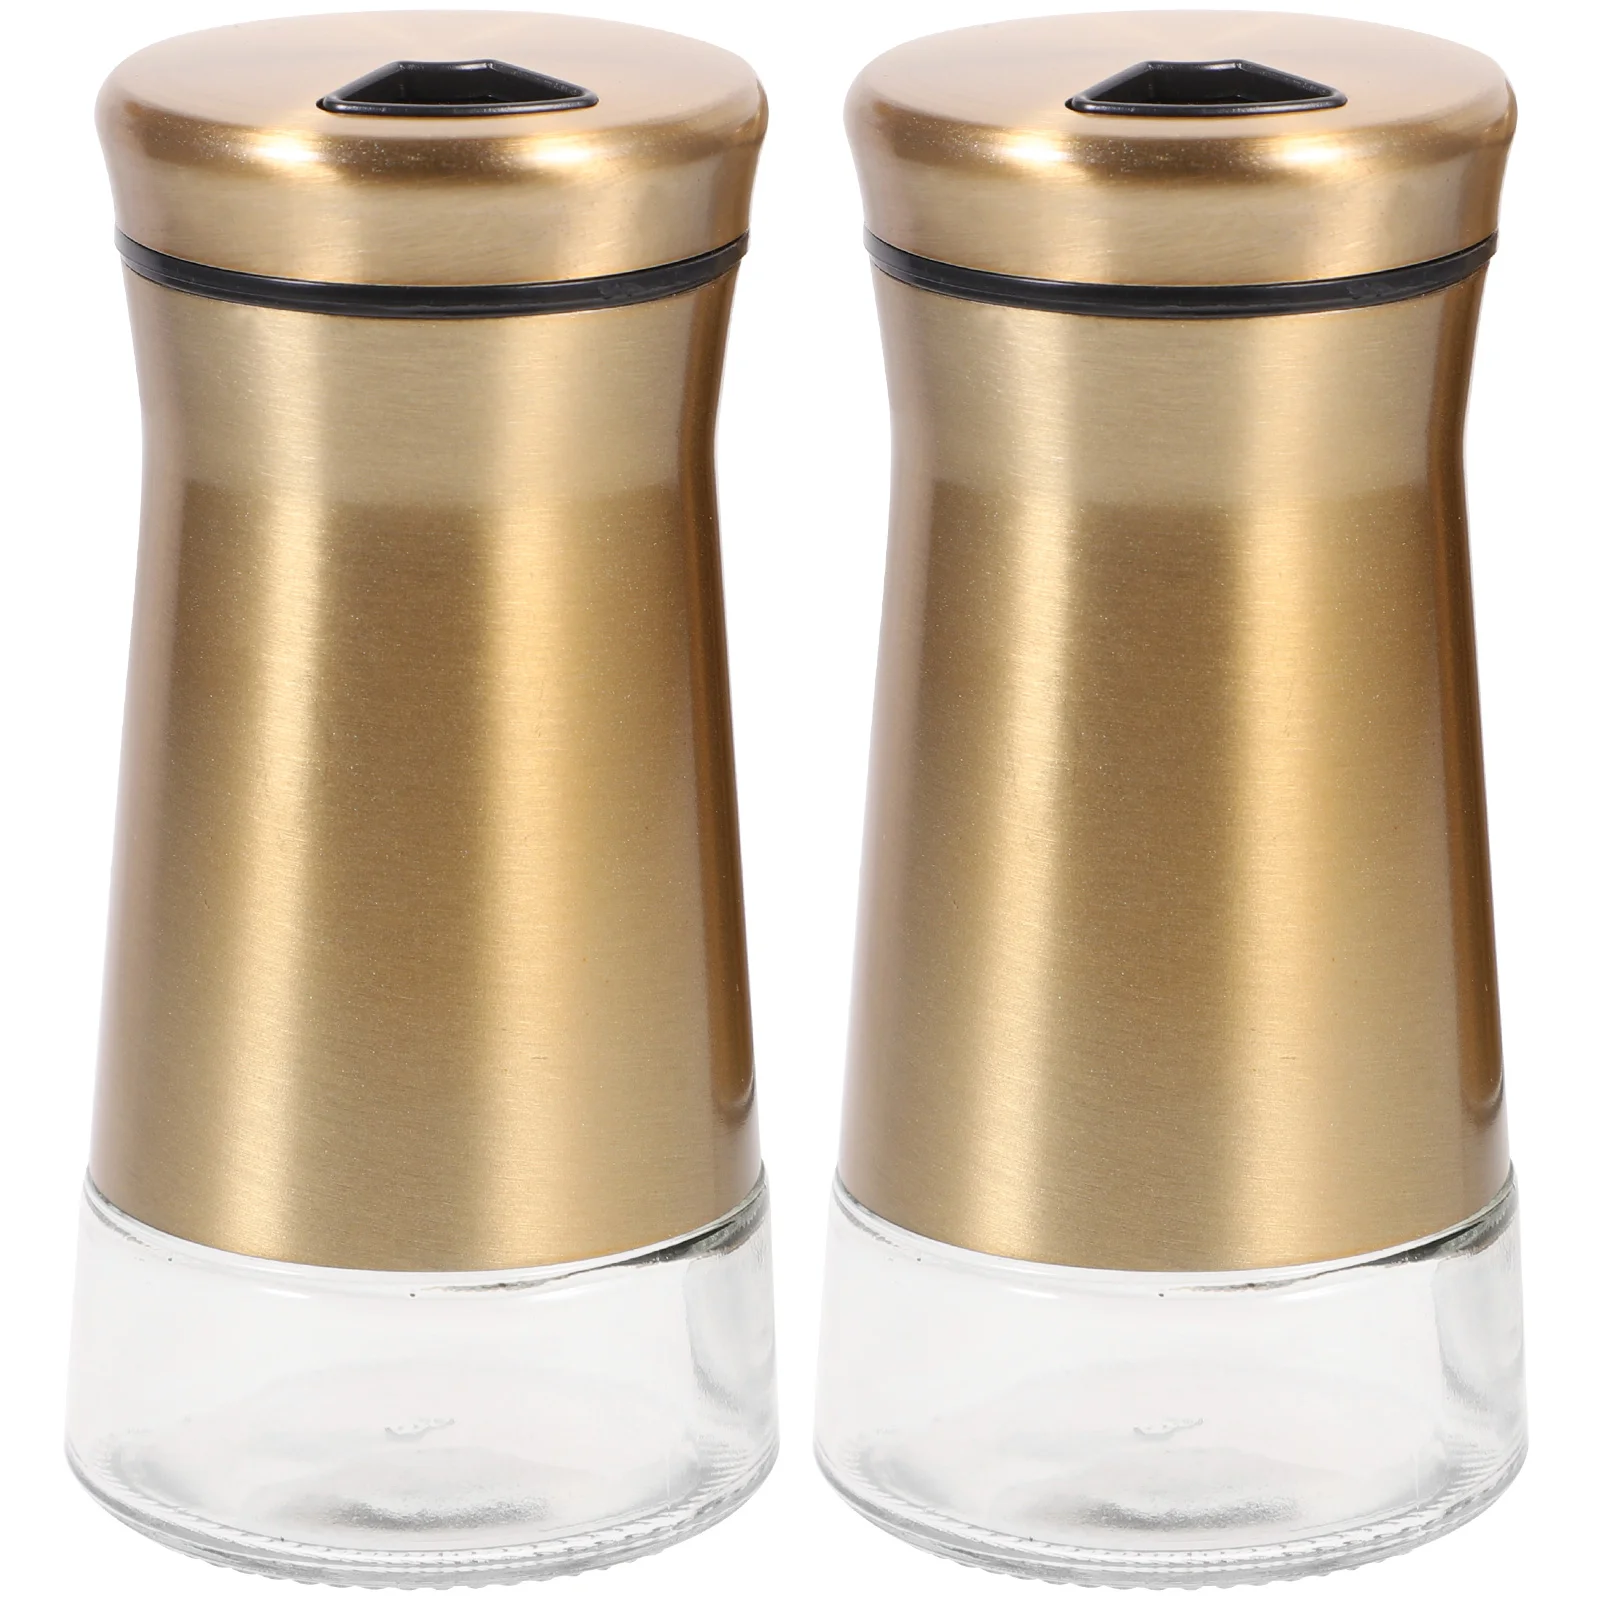 

Salt Kitchen Shaker Seasoning Pepper Shakers Dispenser Utensils Container Bottles Steel Stainless Sugar Jar Jars